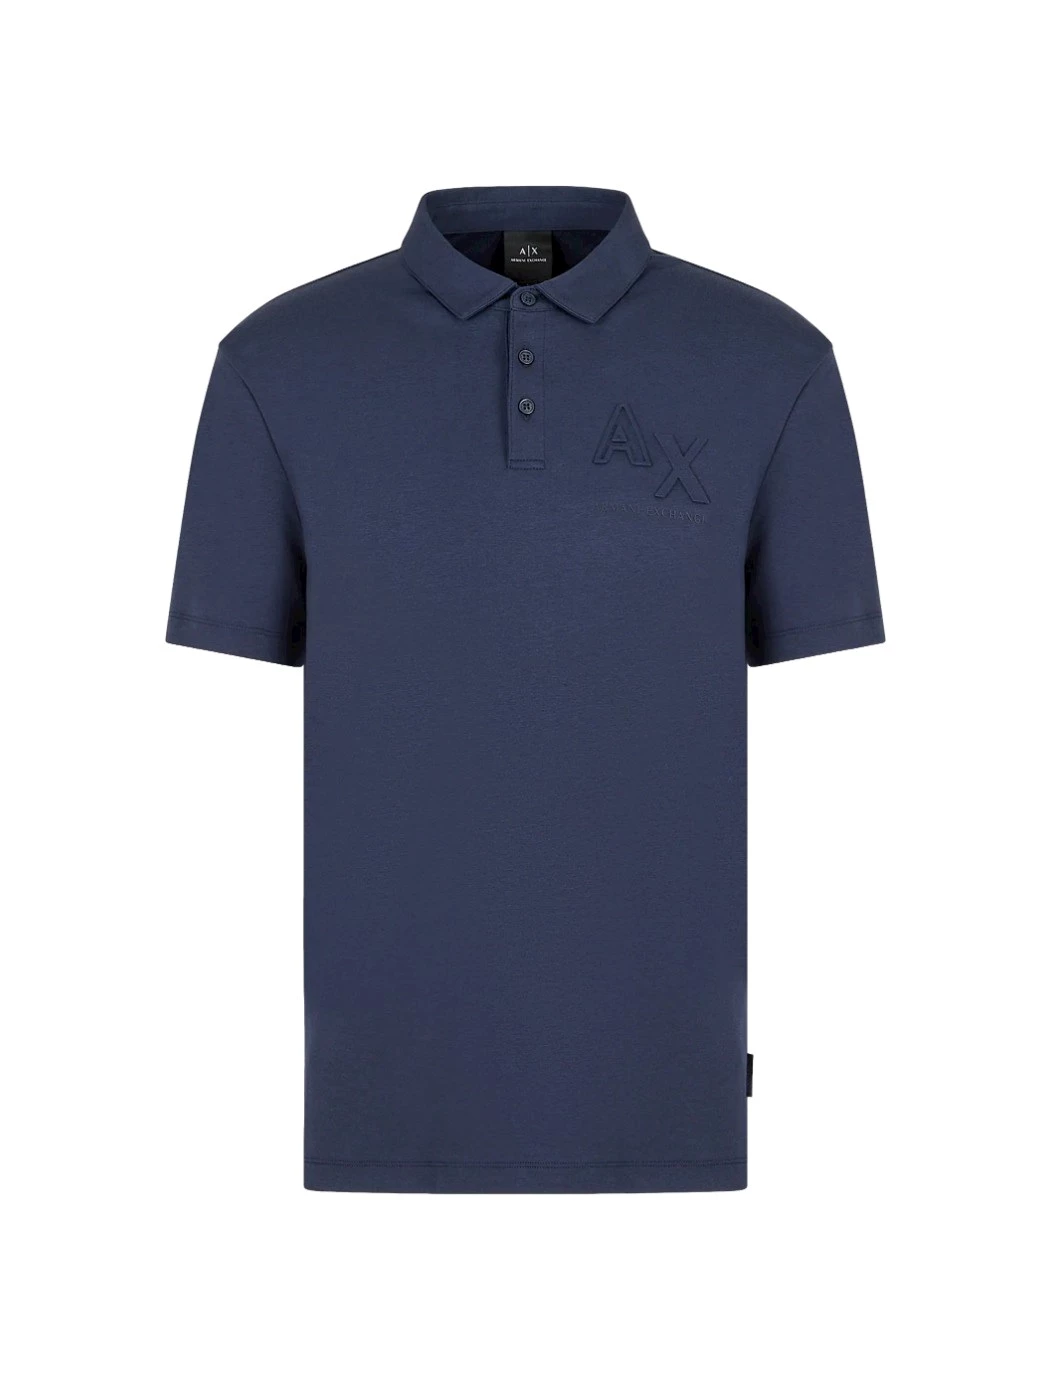 Armani Exchange cotton and modal polo shirt